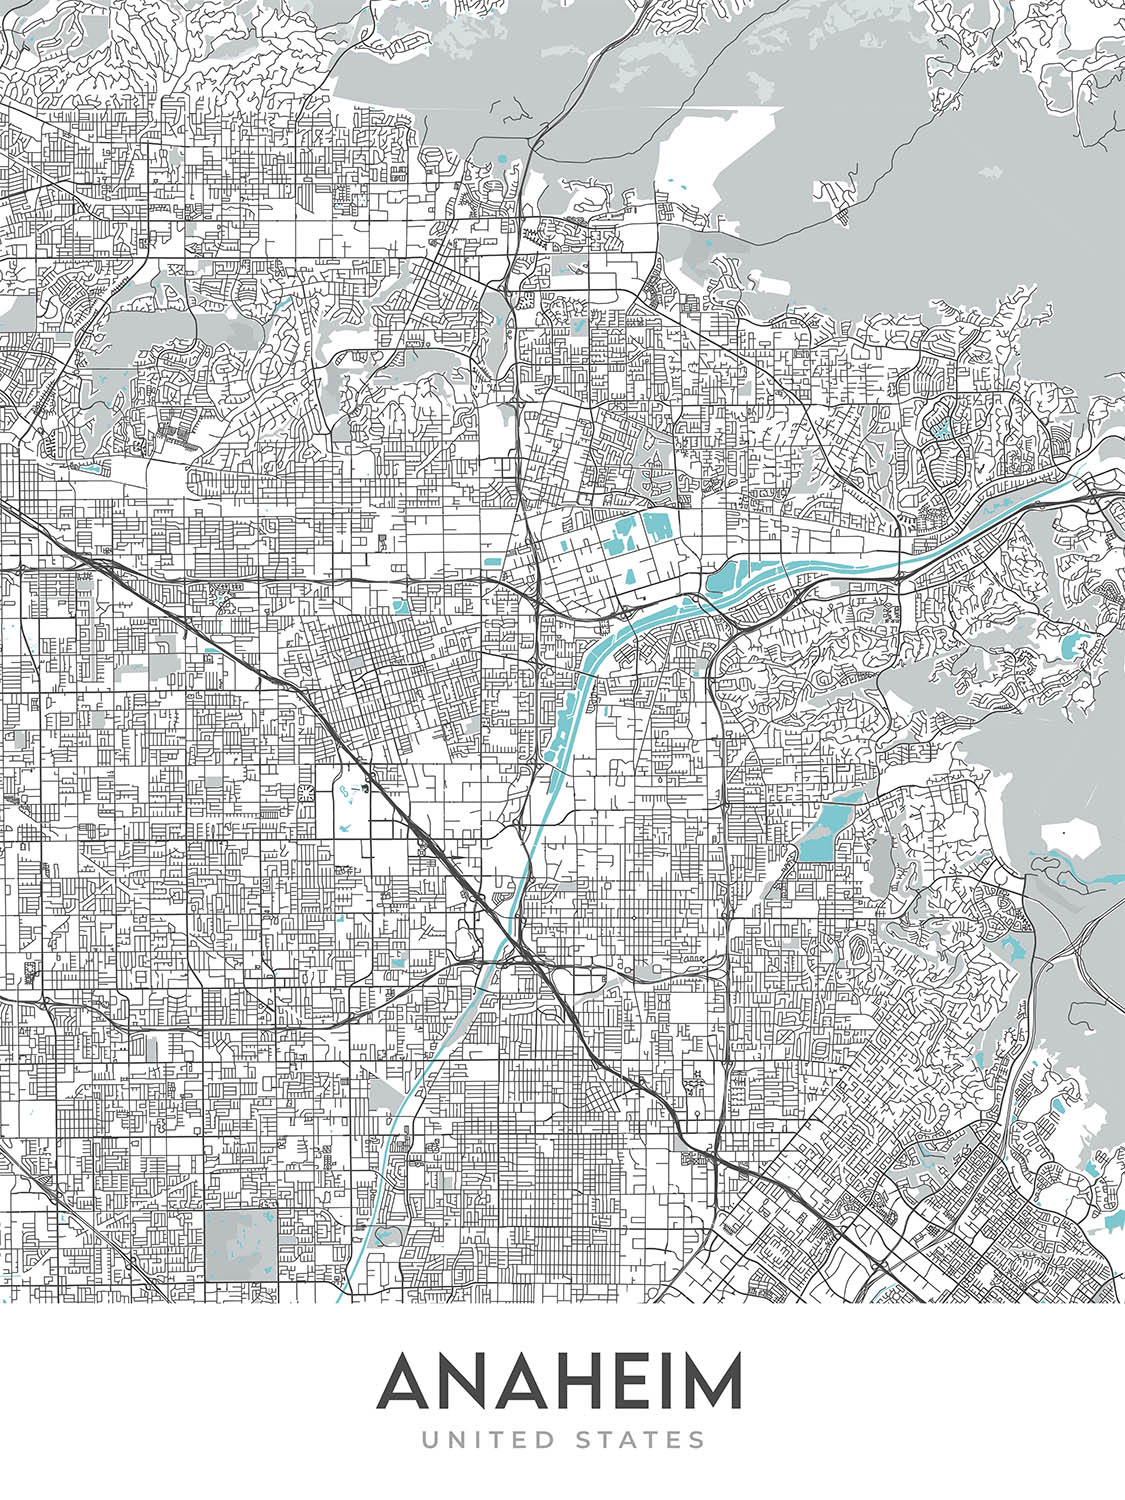 Modern City Map of Anaheim, CA: Disneyland, Angel Stadium, Honda Center, Anaheim Convention Center, Fullerton